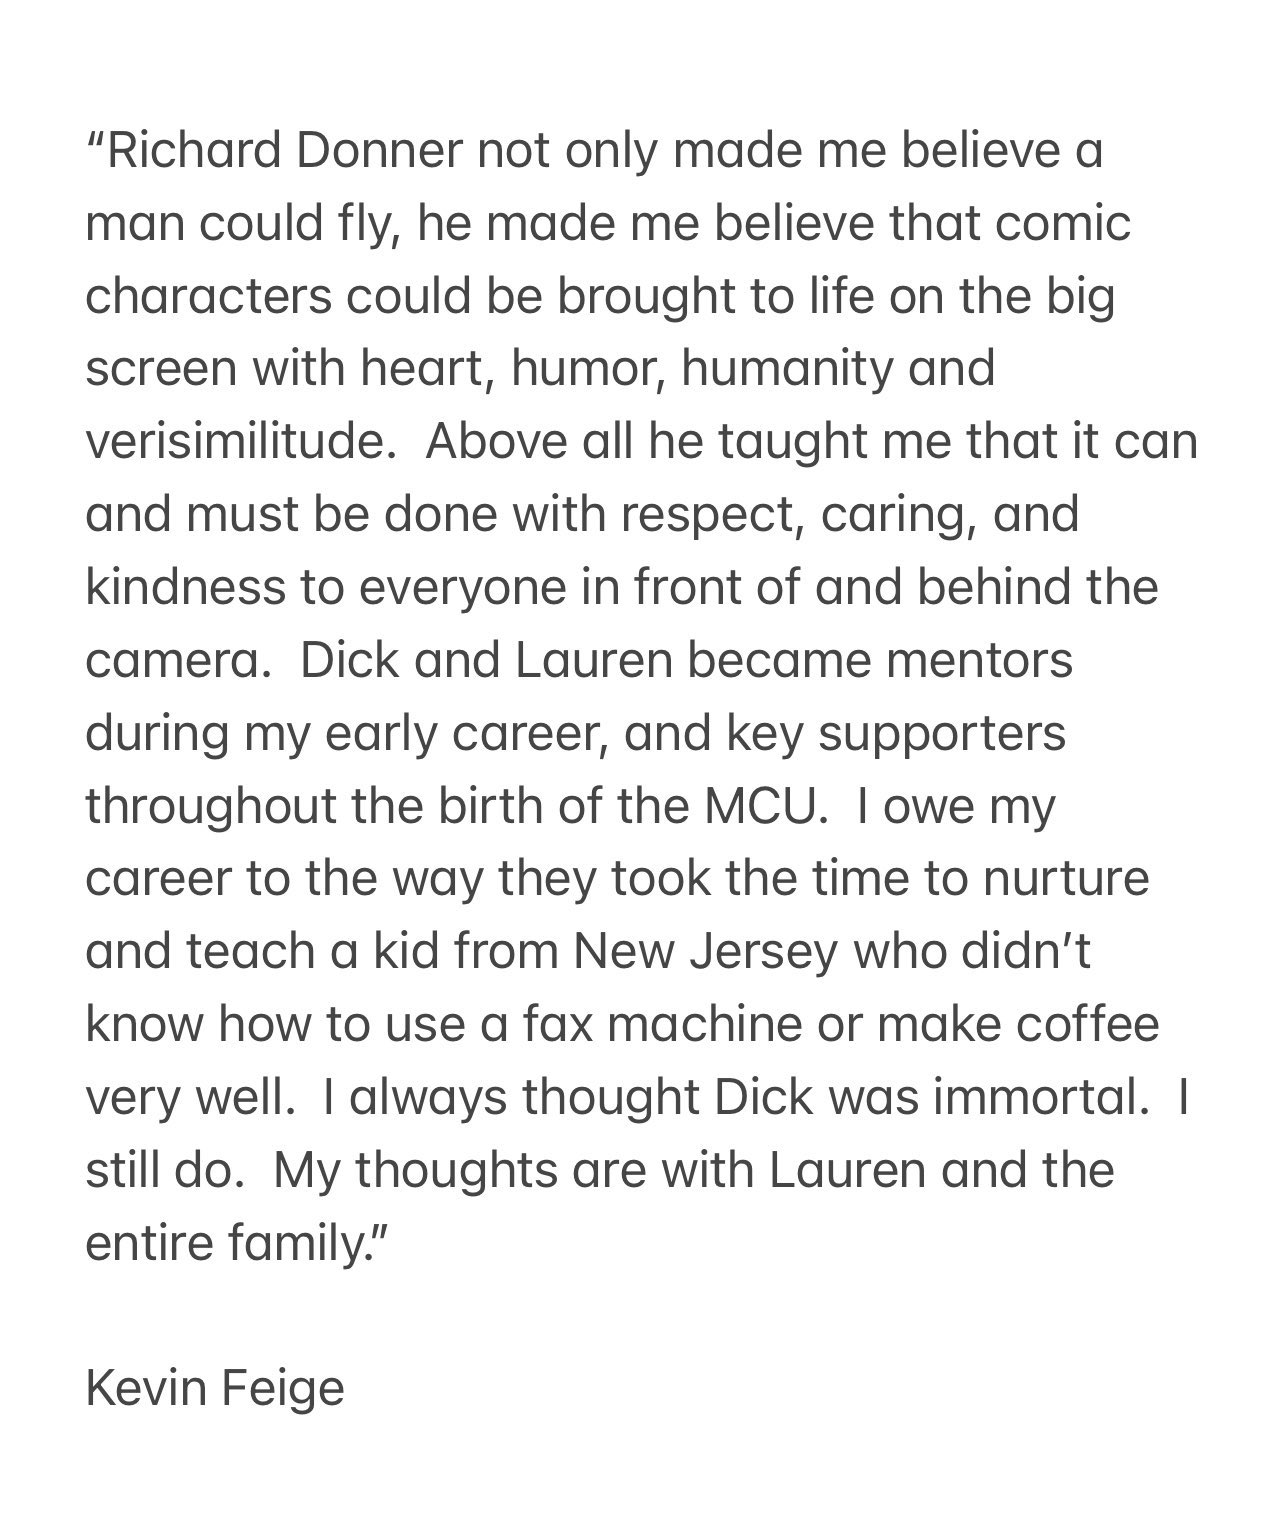 Kevin Feige on Richard Donner